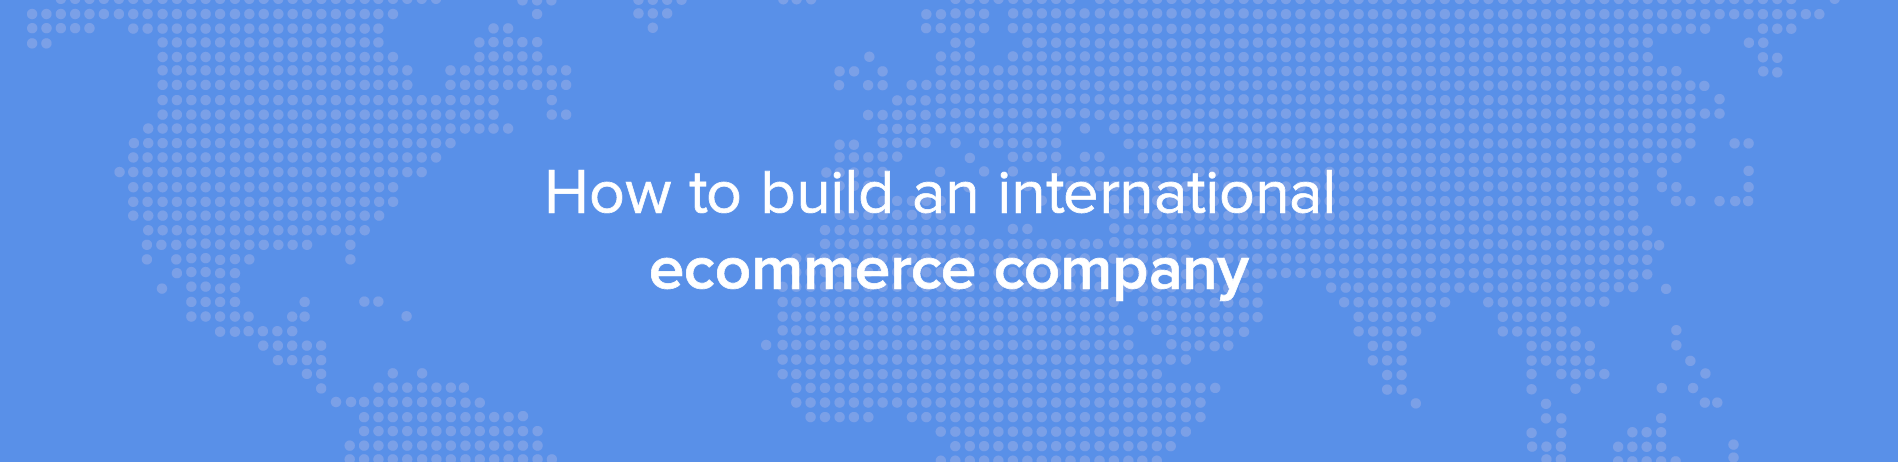 Como montar uma empresa de e-commerce internacional